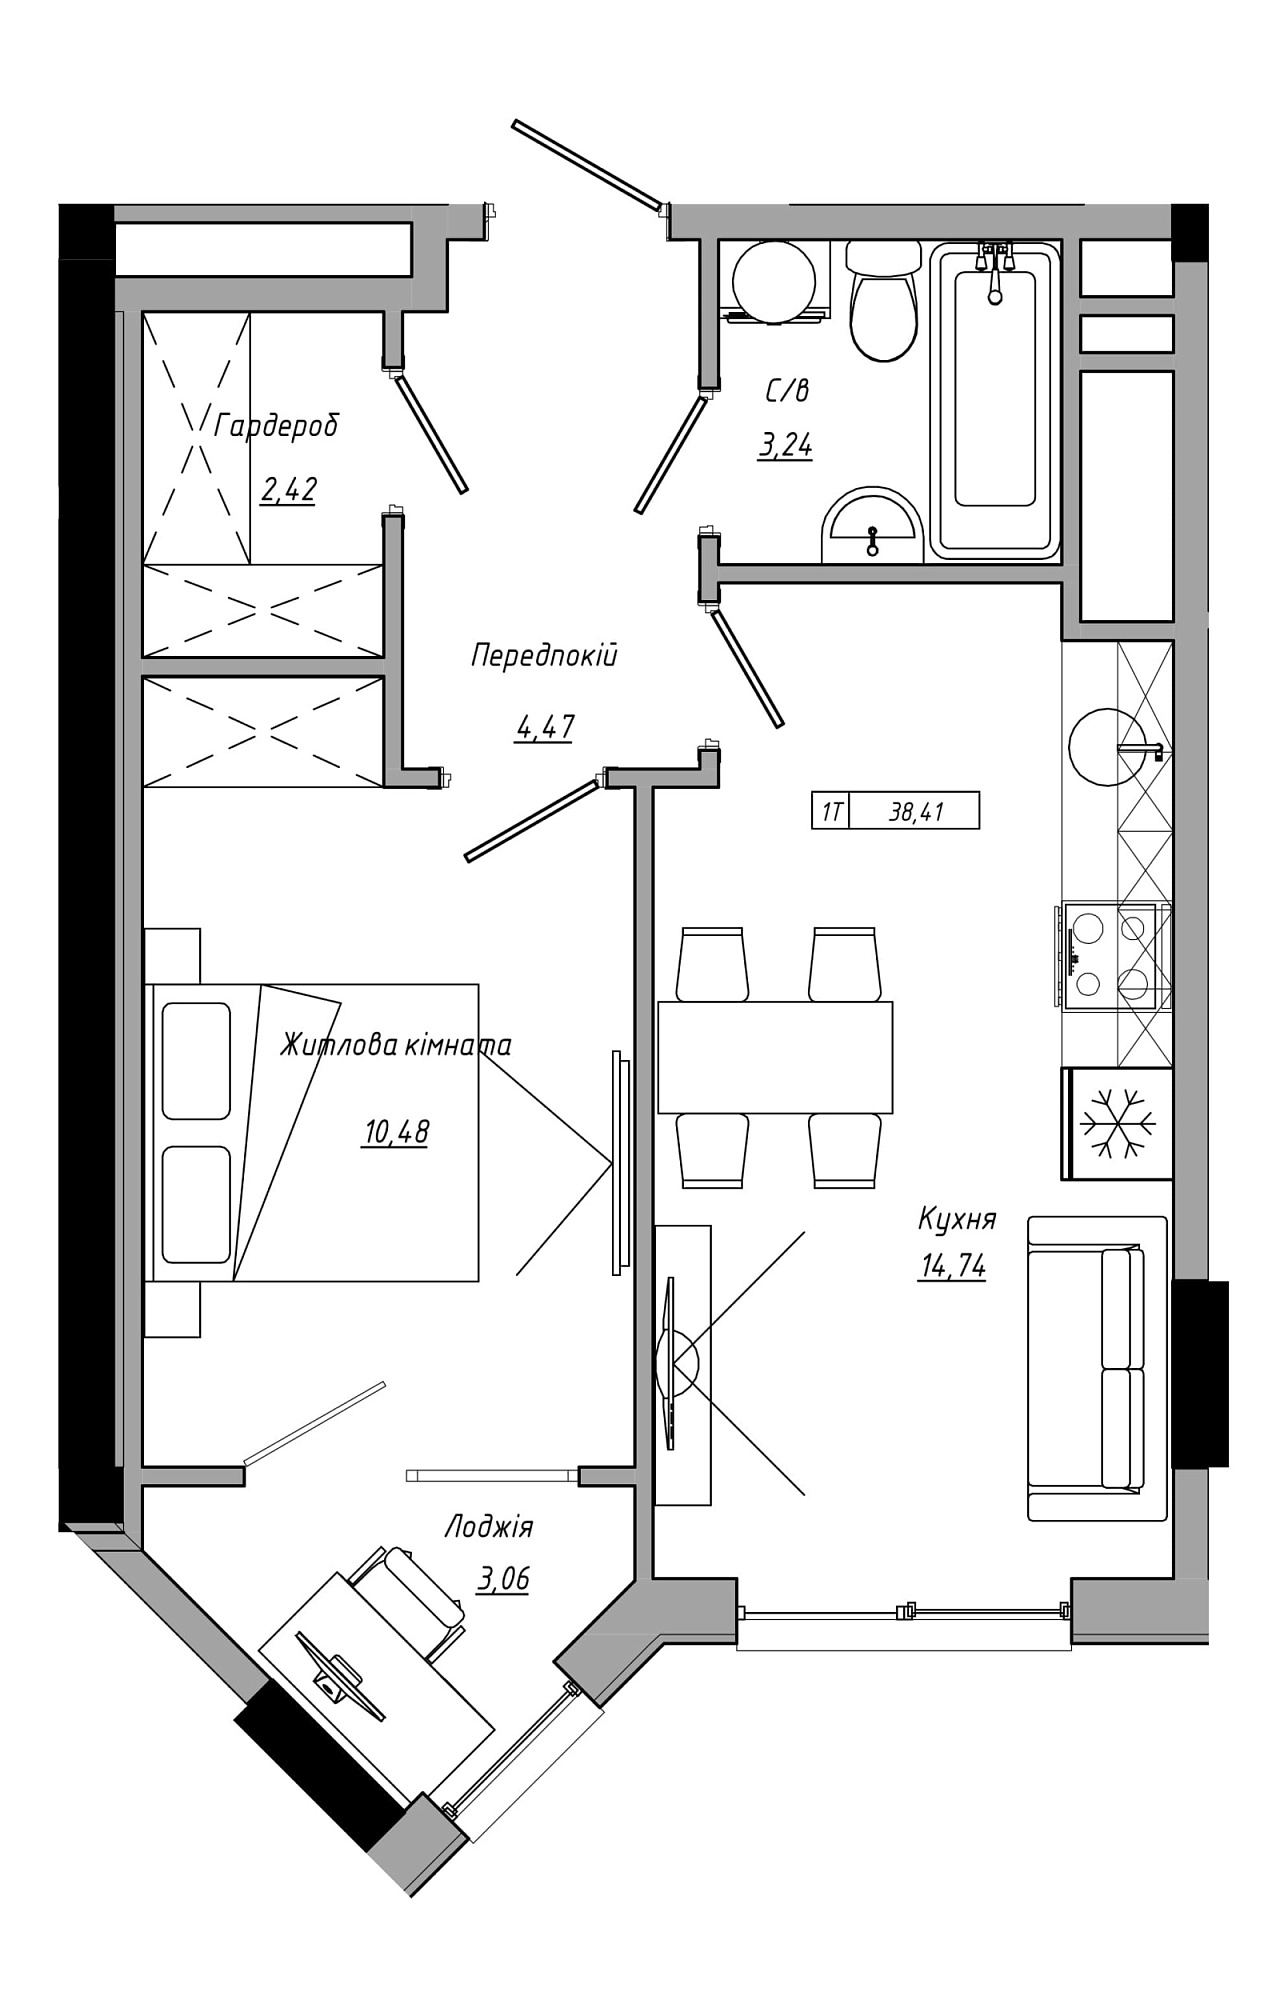 Планування 1-к квартира площею 38.41м2, AB-21-12/00022.